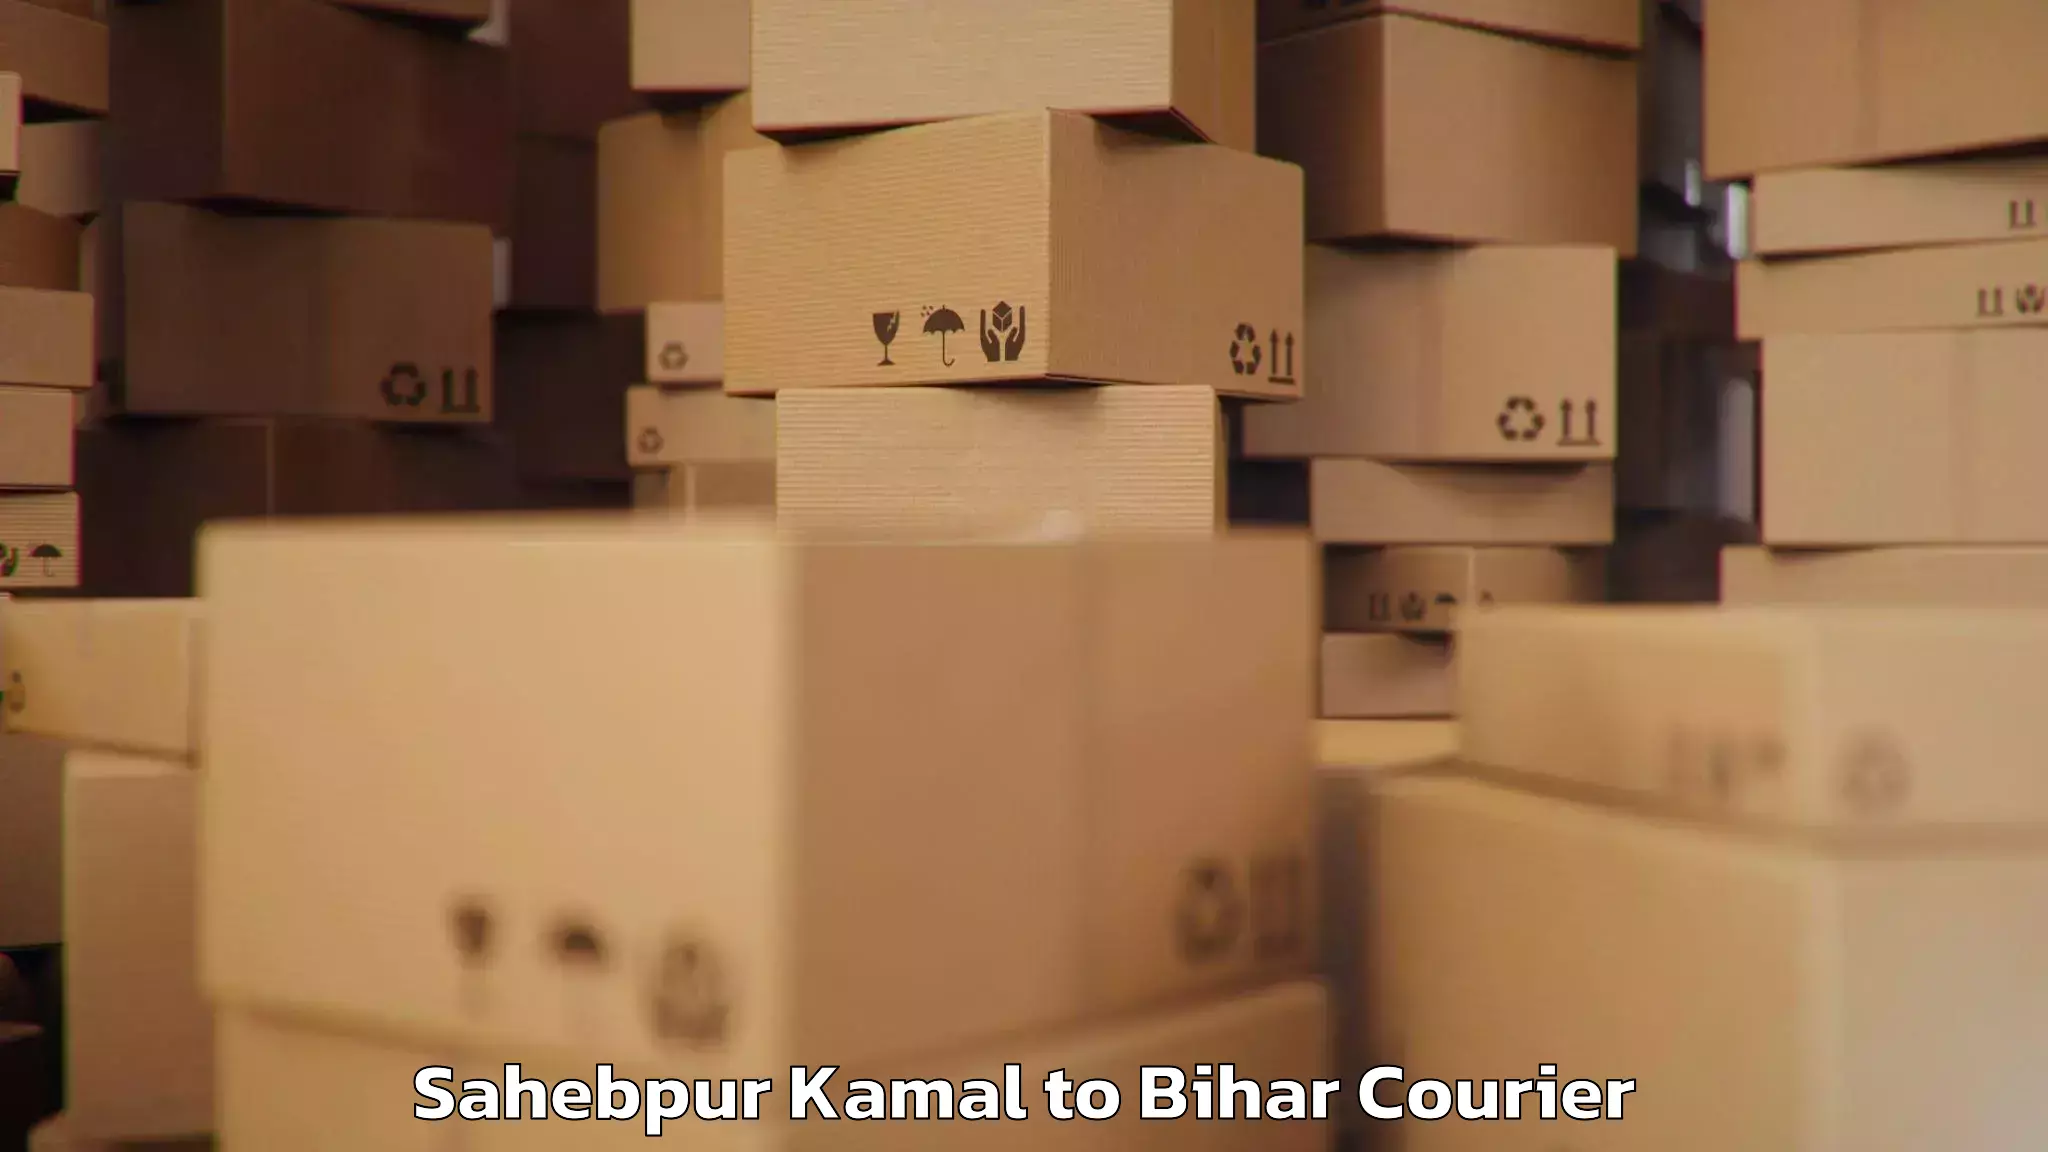 Baggage transport quote Sahebpur Kamal to Bharwara